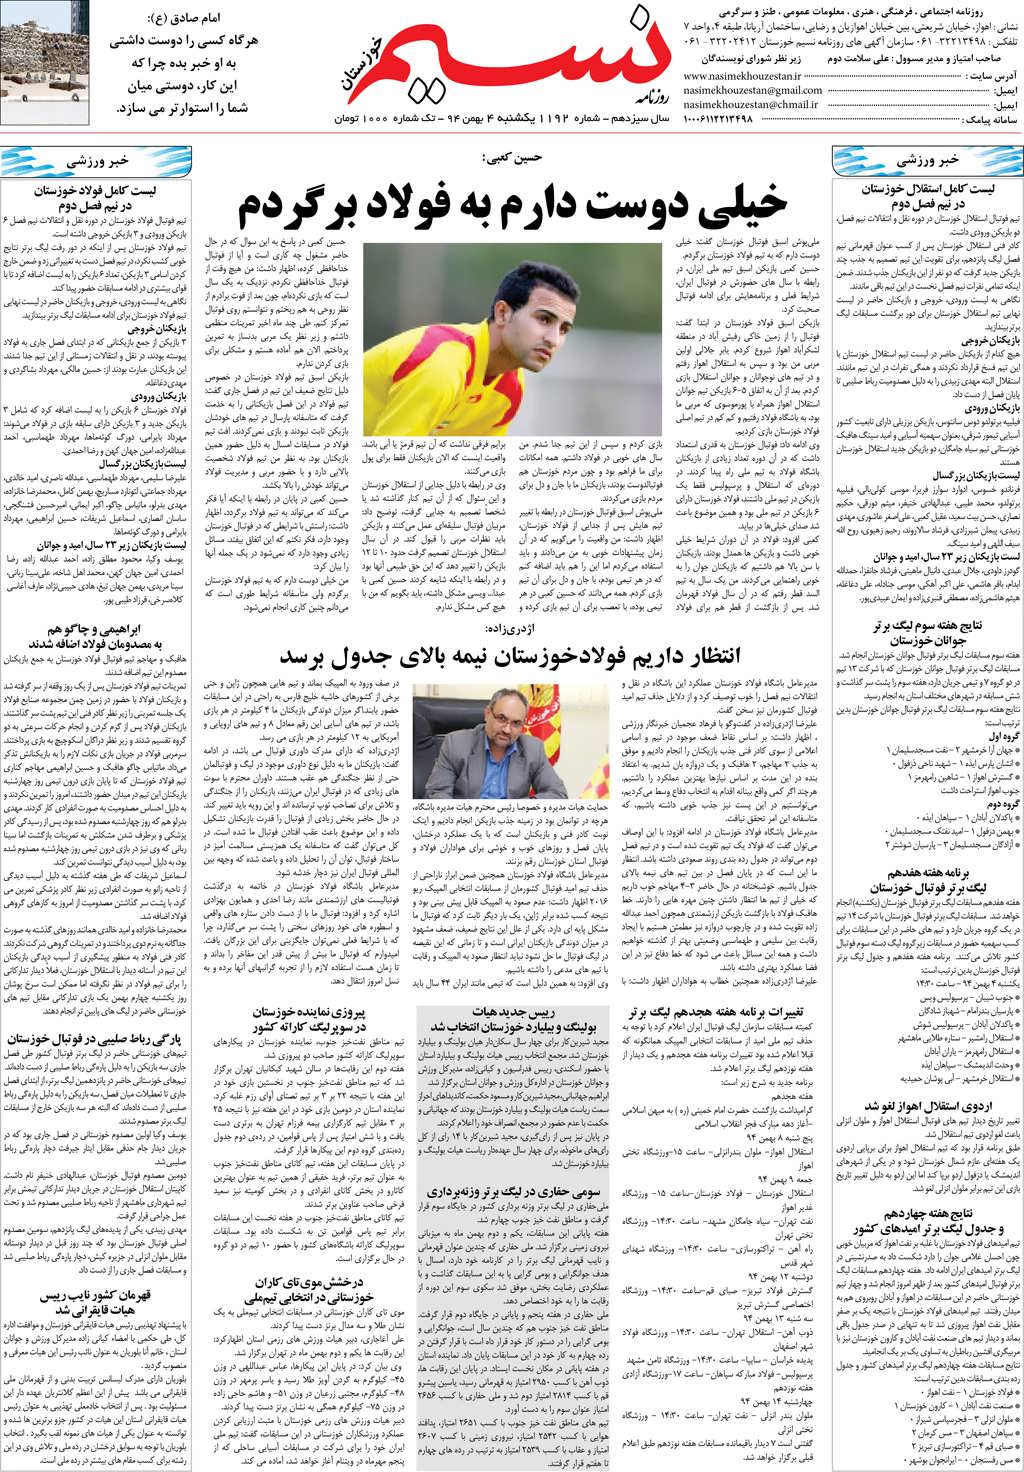 صفحه آخر روزنامه نسیم شماره 1192